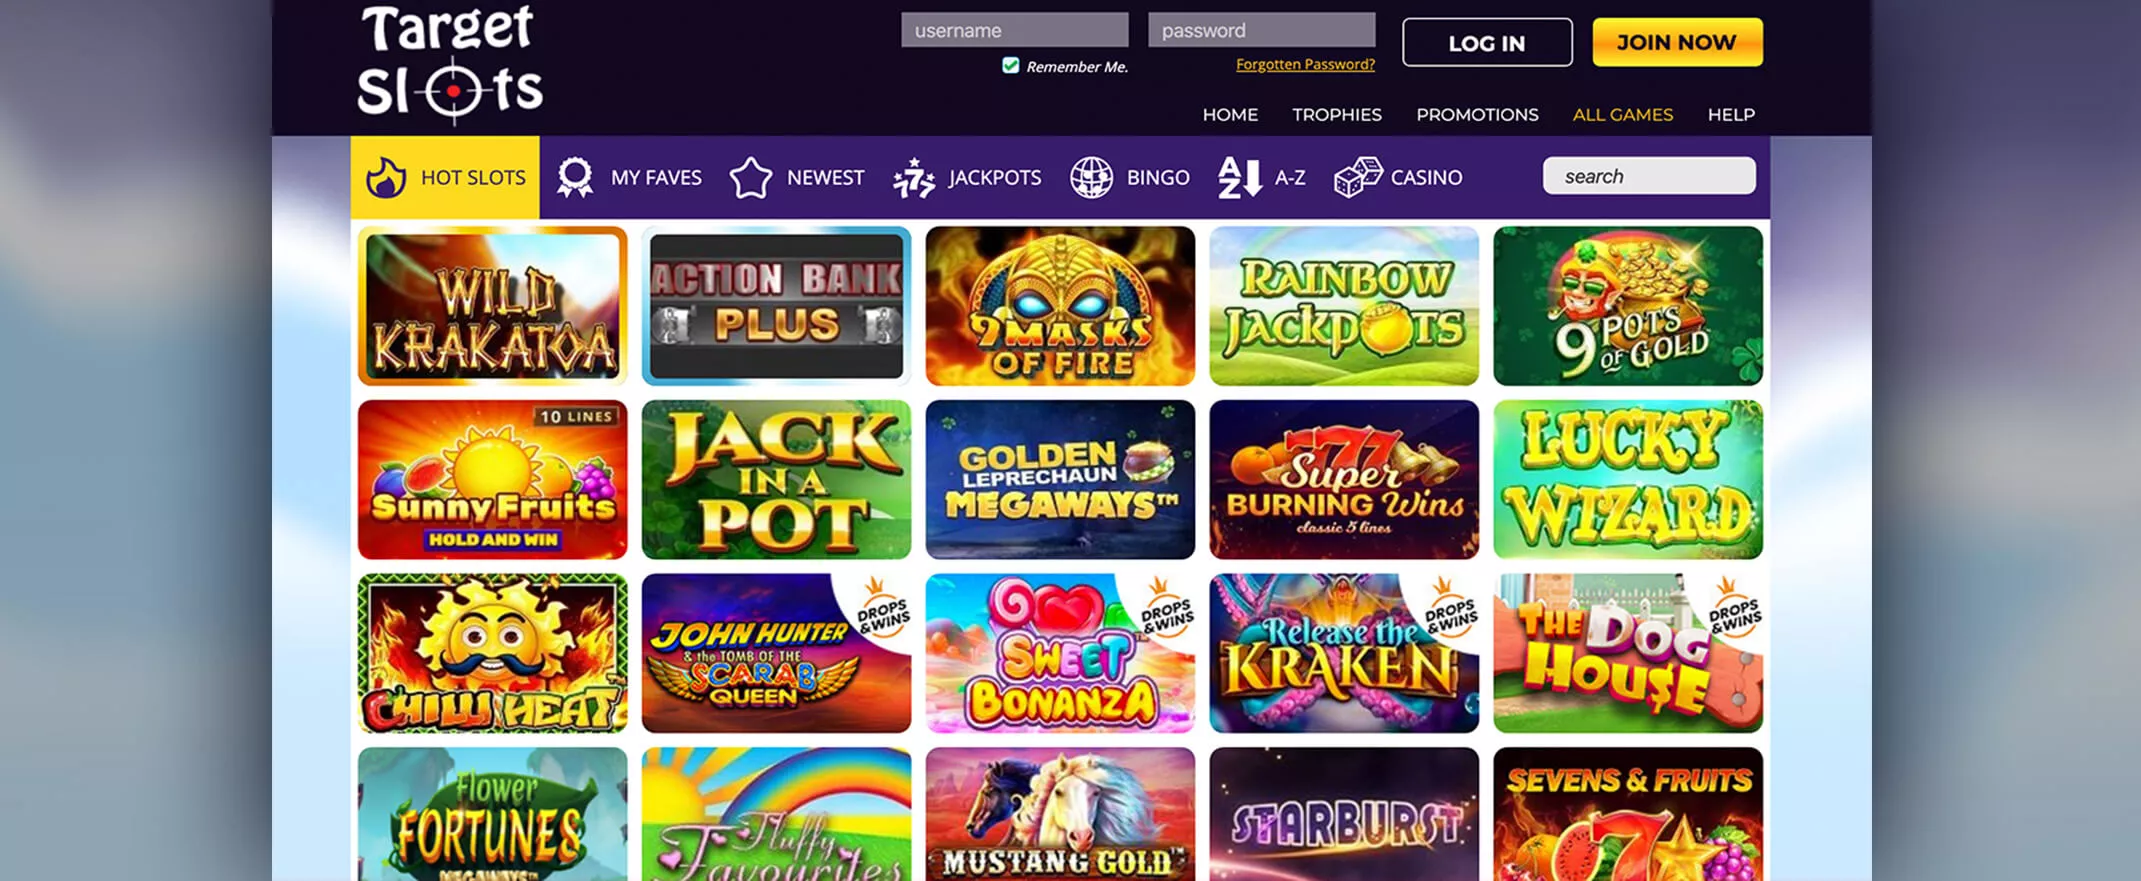 Target Slots Casino Online Games